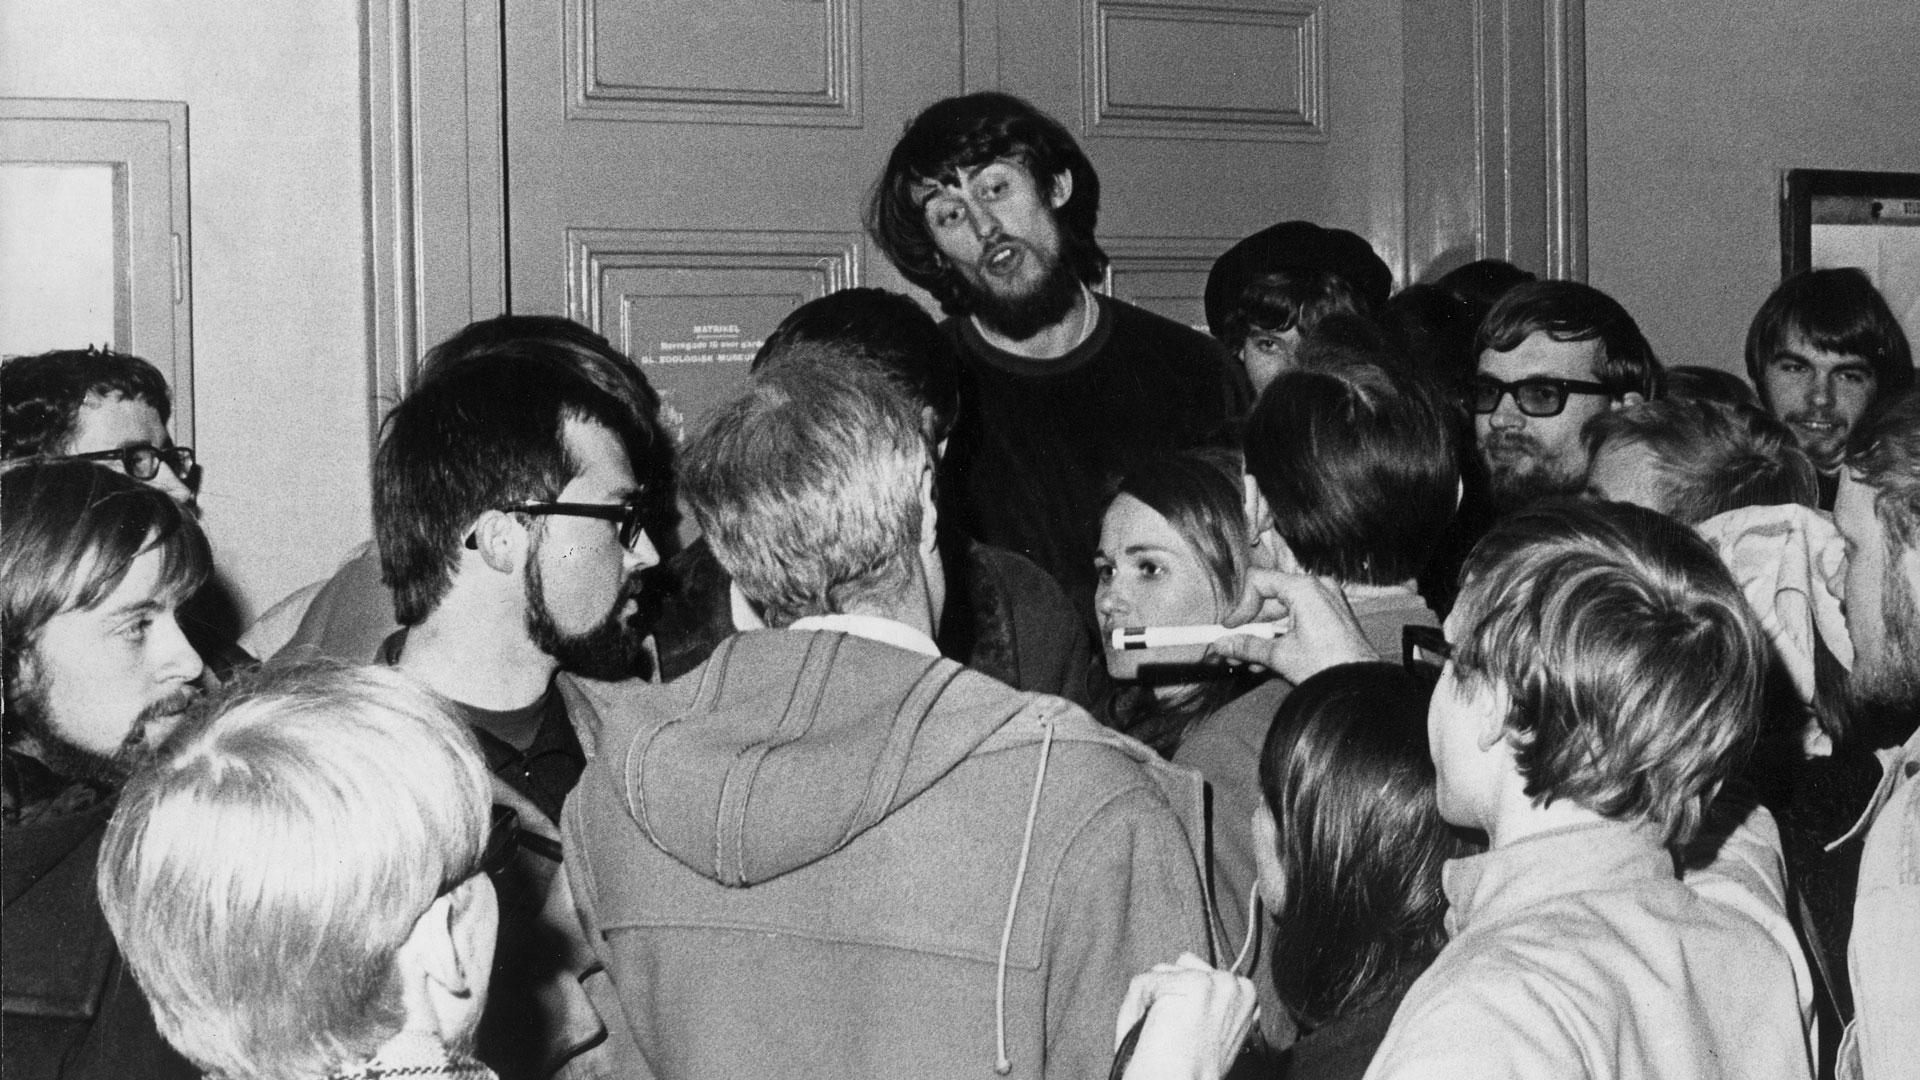 I 1969 forhindrede de medicinstuderende professorerne i at få adgang til lokalet. Rektor Mogens Fog (med ryggen til) blev vred. Min far ses helt ude i venstre hjørne med mørkt hår og fuldskæg. Foto: Ritzau/Scanpix